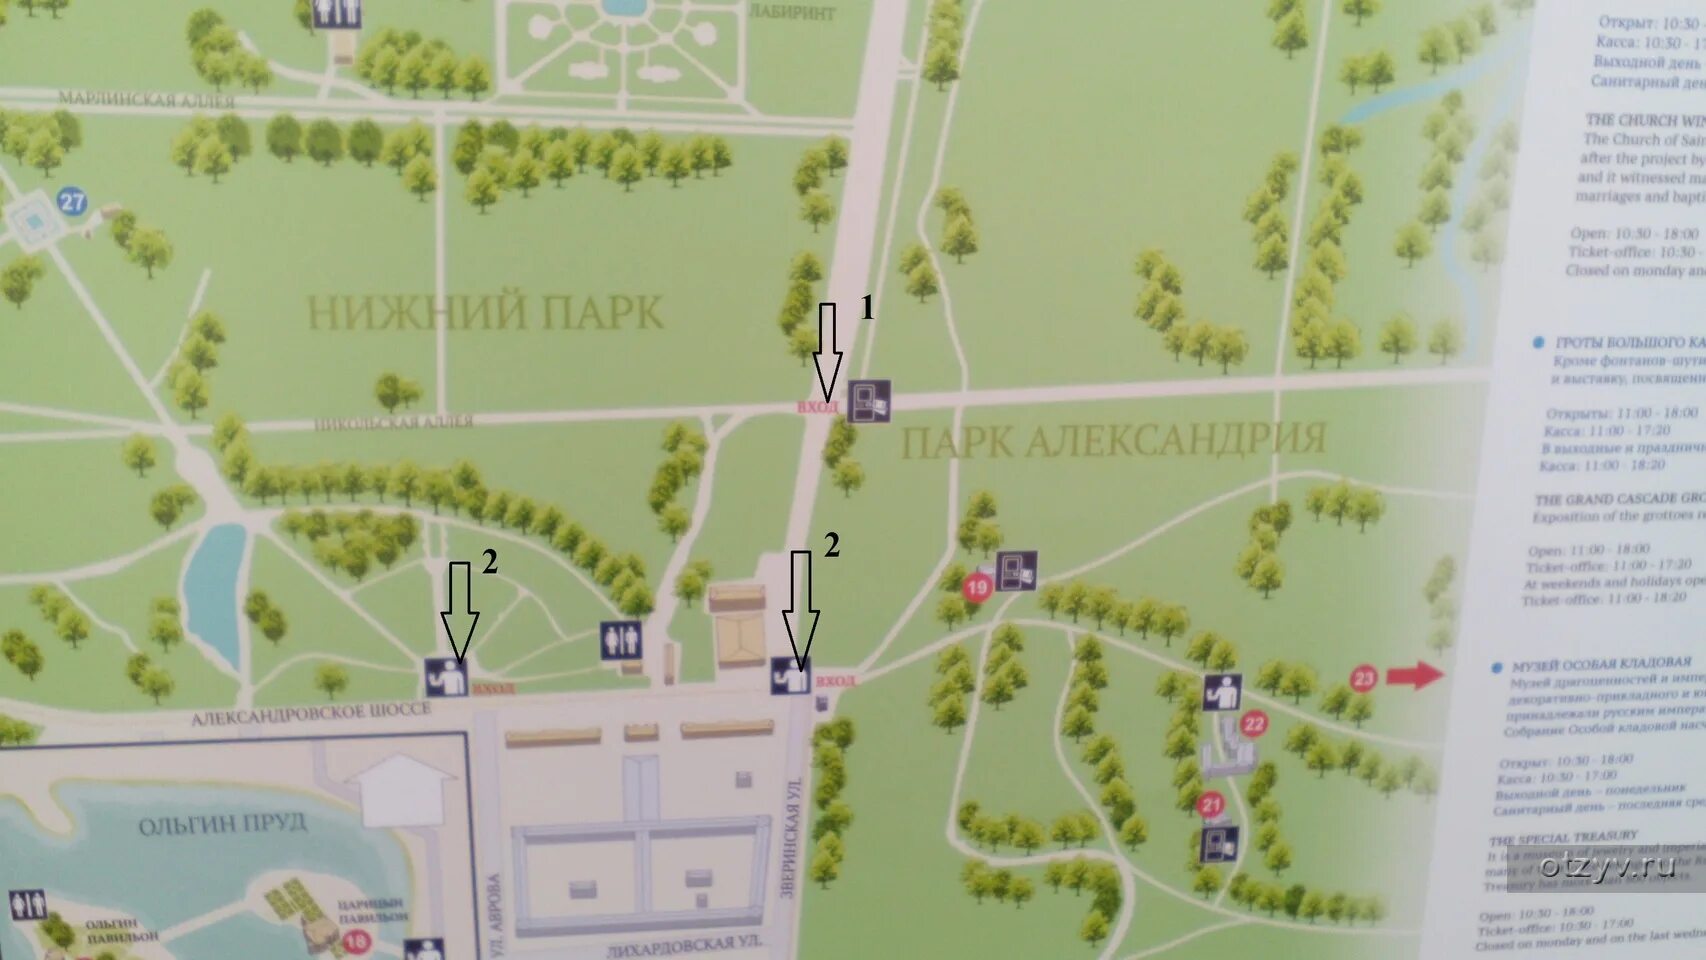 План парка Петергоф Нижний парк. Карта Петергофа с фонтанами Нижний парк. Схема фонтанов Петергофа. Схема Петергофа Нижний парк с фонтанами.